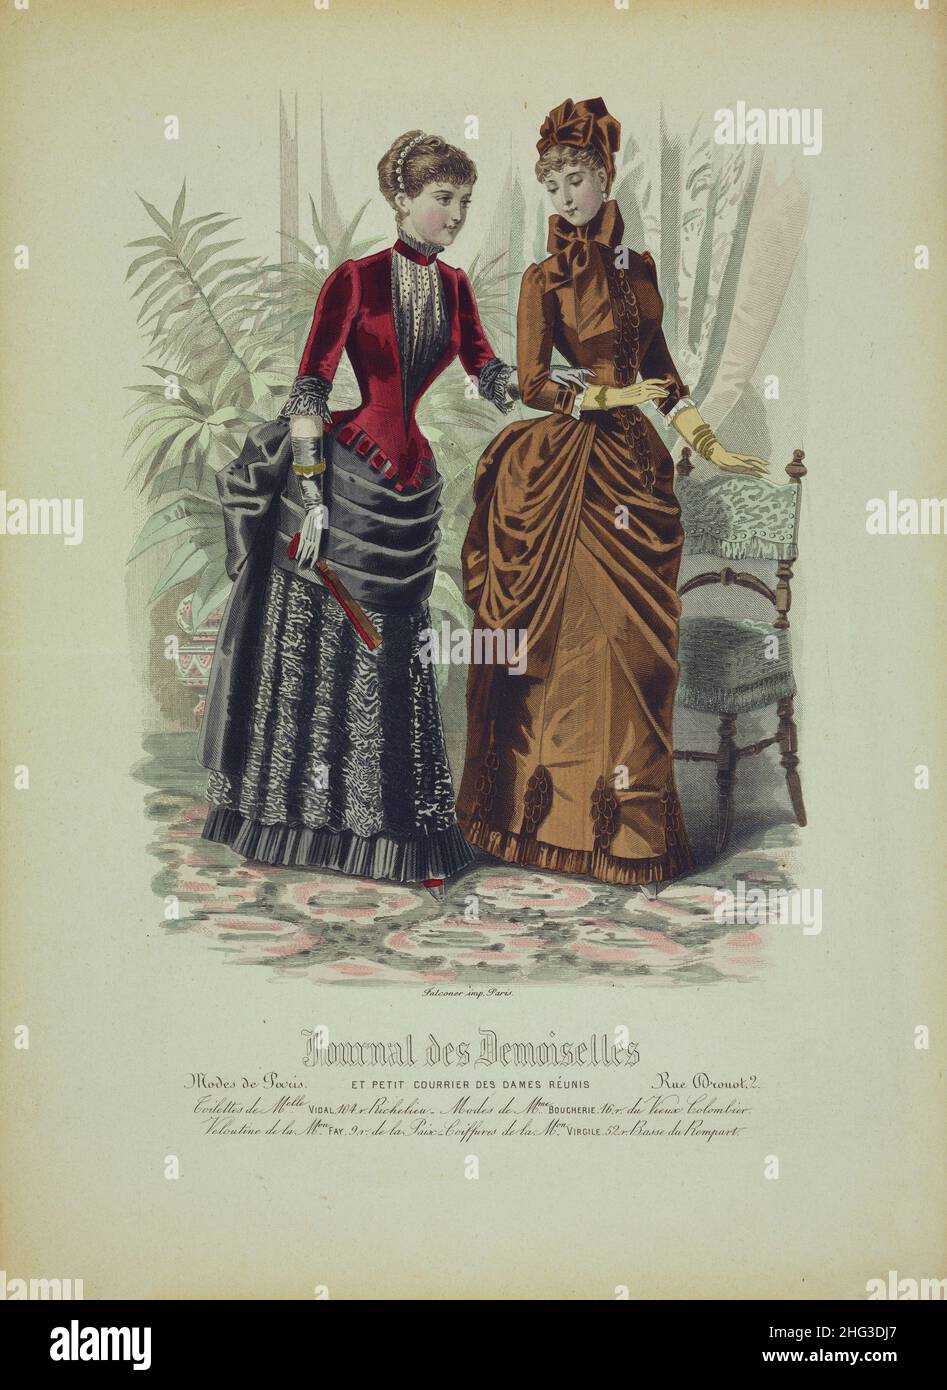 Litografía a color vintage de la moda parisina: Revista para niñas y un pequeño correo de las señoras reunidas. 1884 Foto de stock